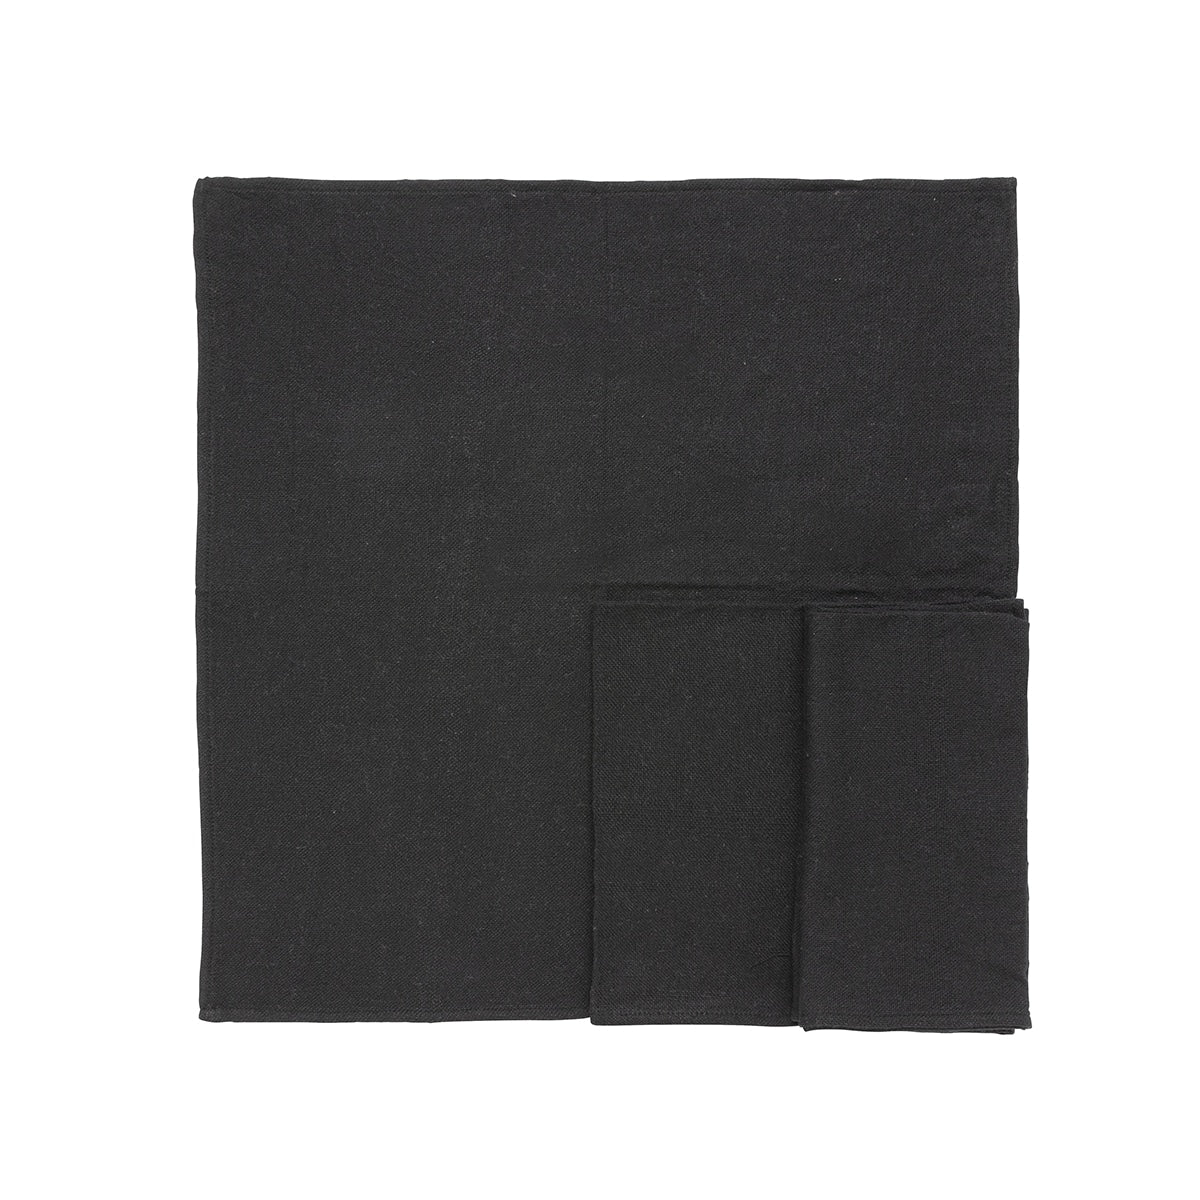 Set de 4 serviette de table noir.  Cette serviette de table est fabriquée à partir de fils de coton recyclés et tissés sur un métier à main traditionnel. Ces serviettes de table peuvent être utilisées comme serviette de table ou comme set de table.